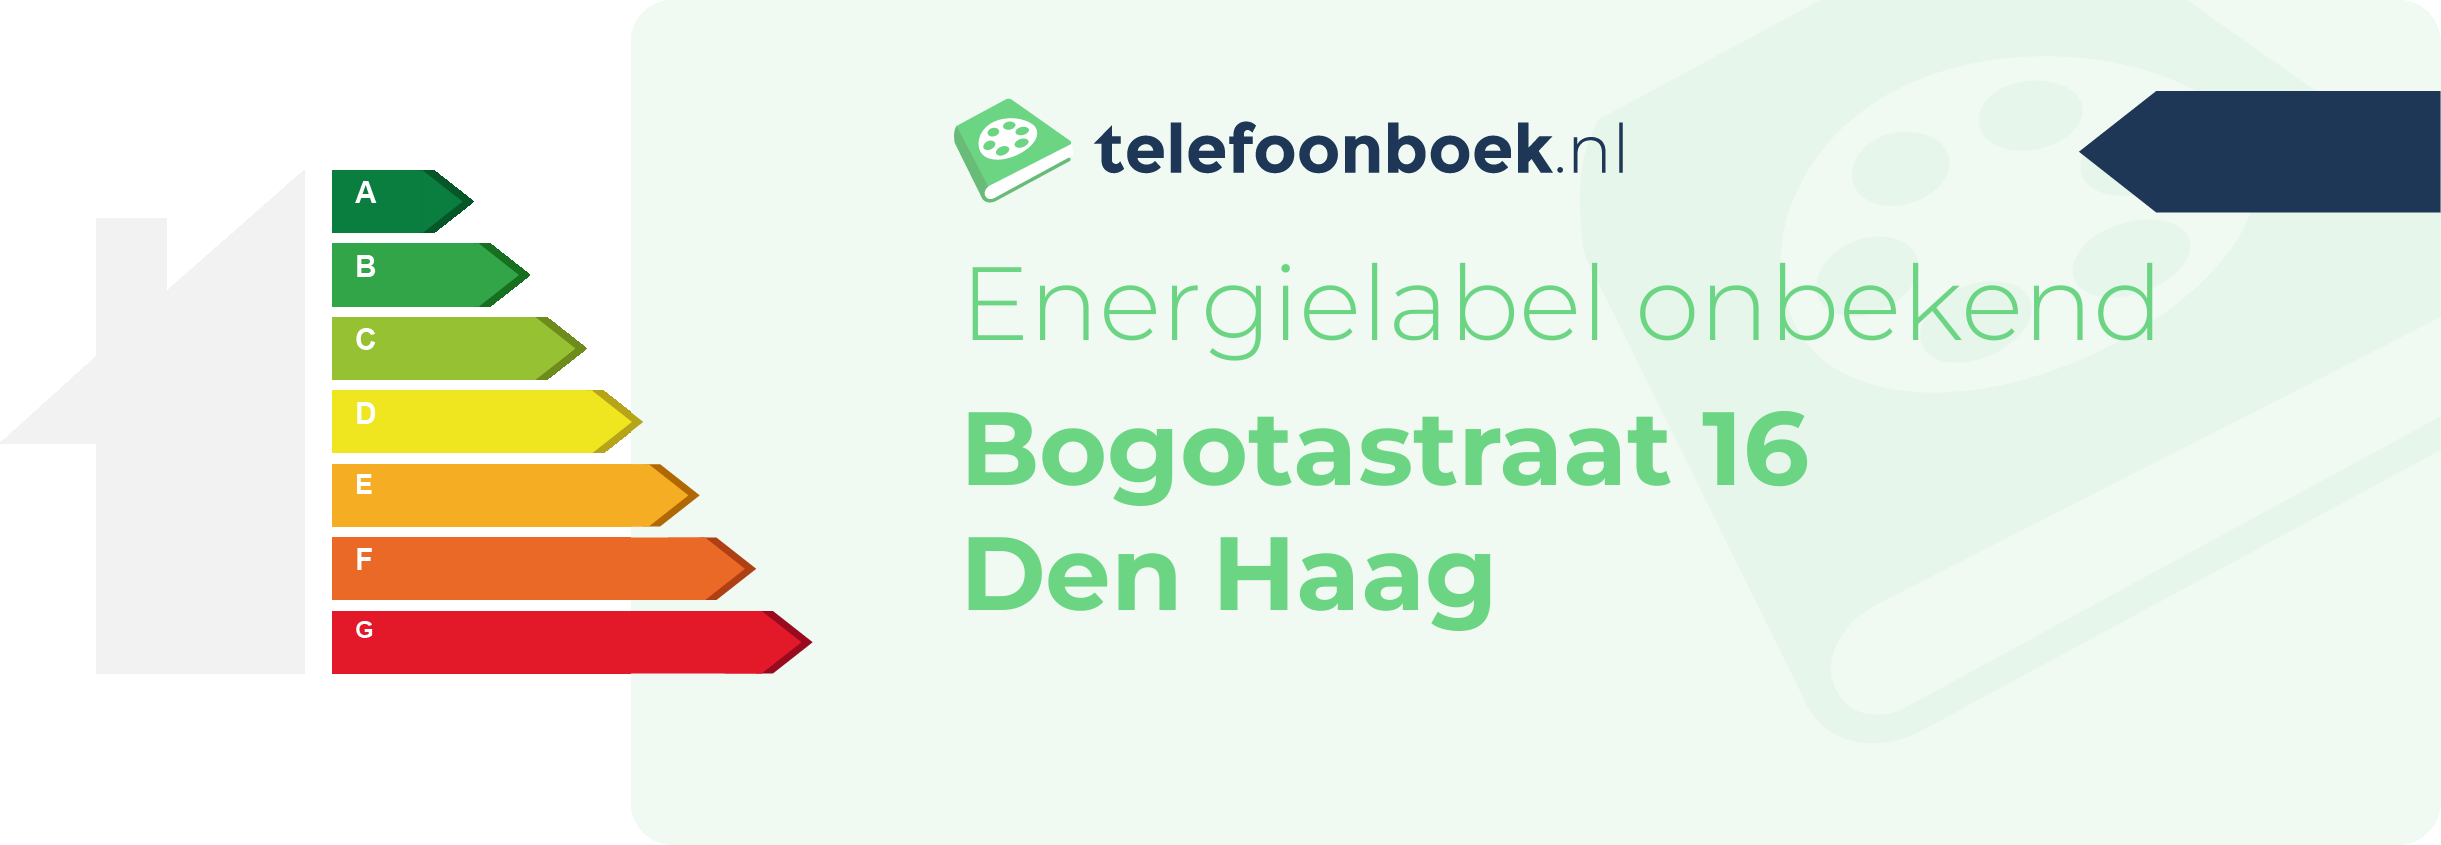 Energielabel Bogotastraat 16 Den Haag